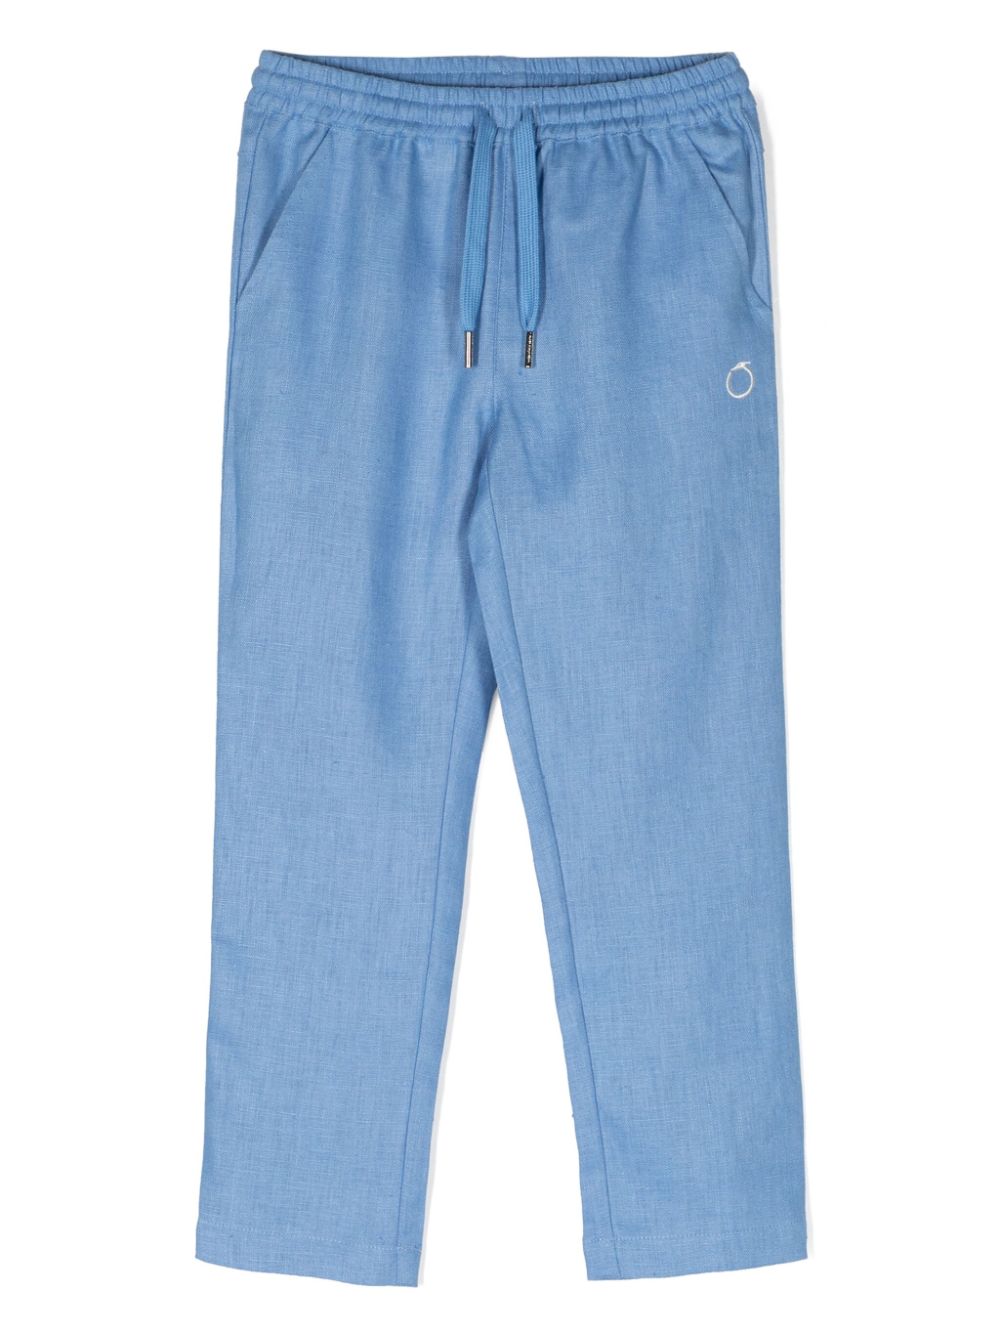 Light blue linen trousers for boys